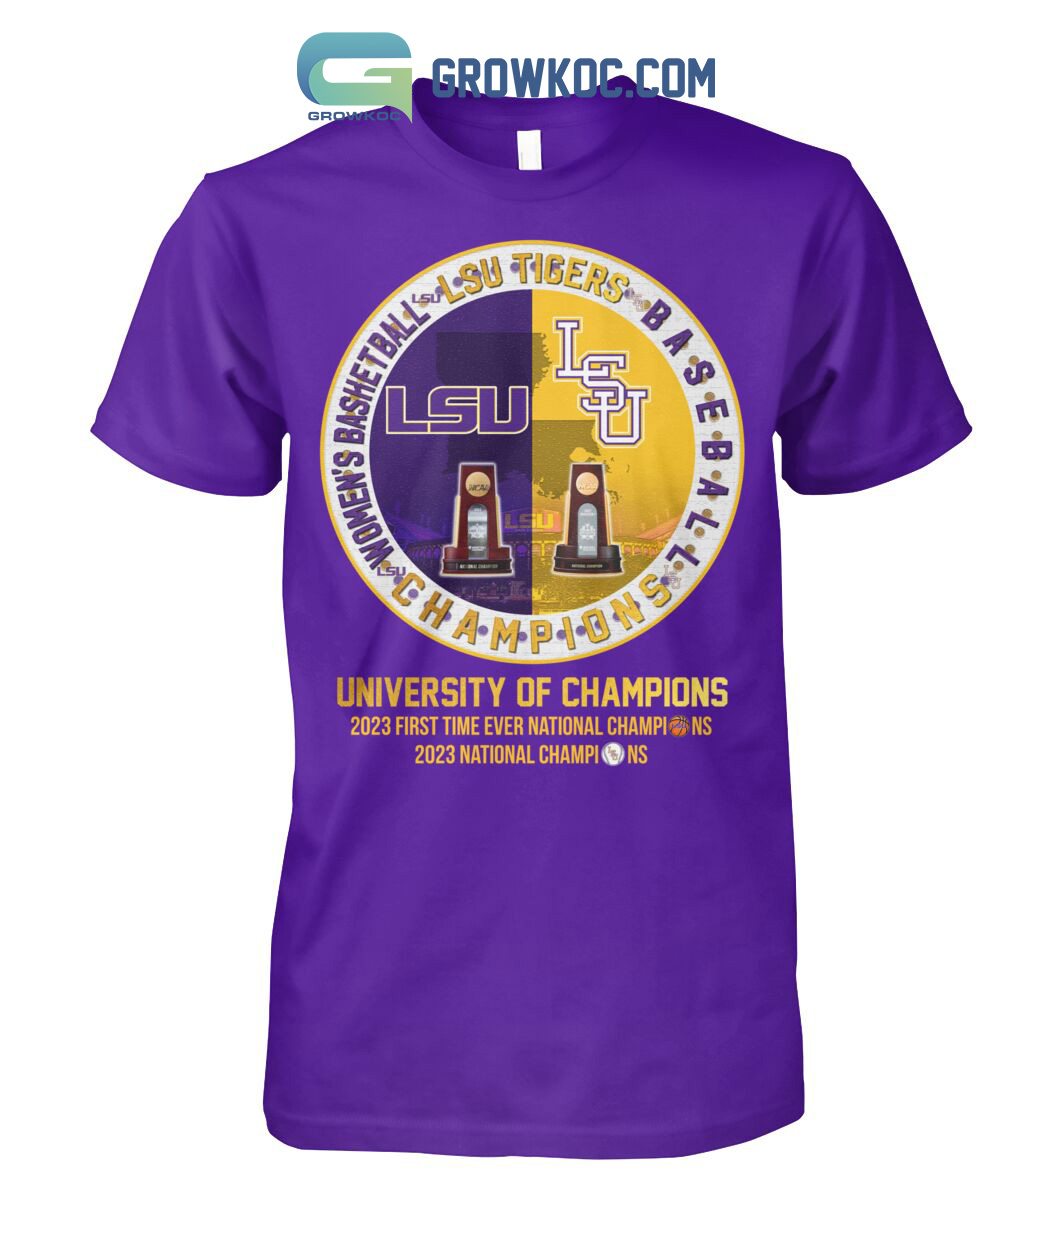 LSU Tigers Baseball And Women's Basketball University Of Champions T Shirt